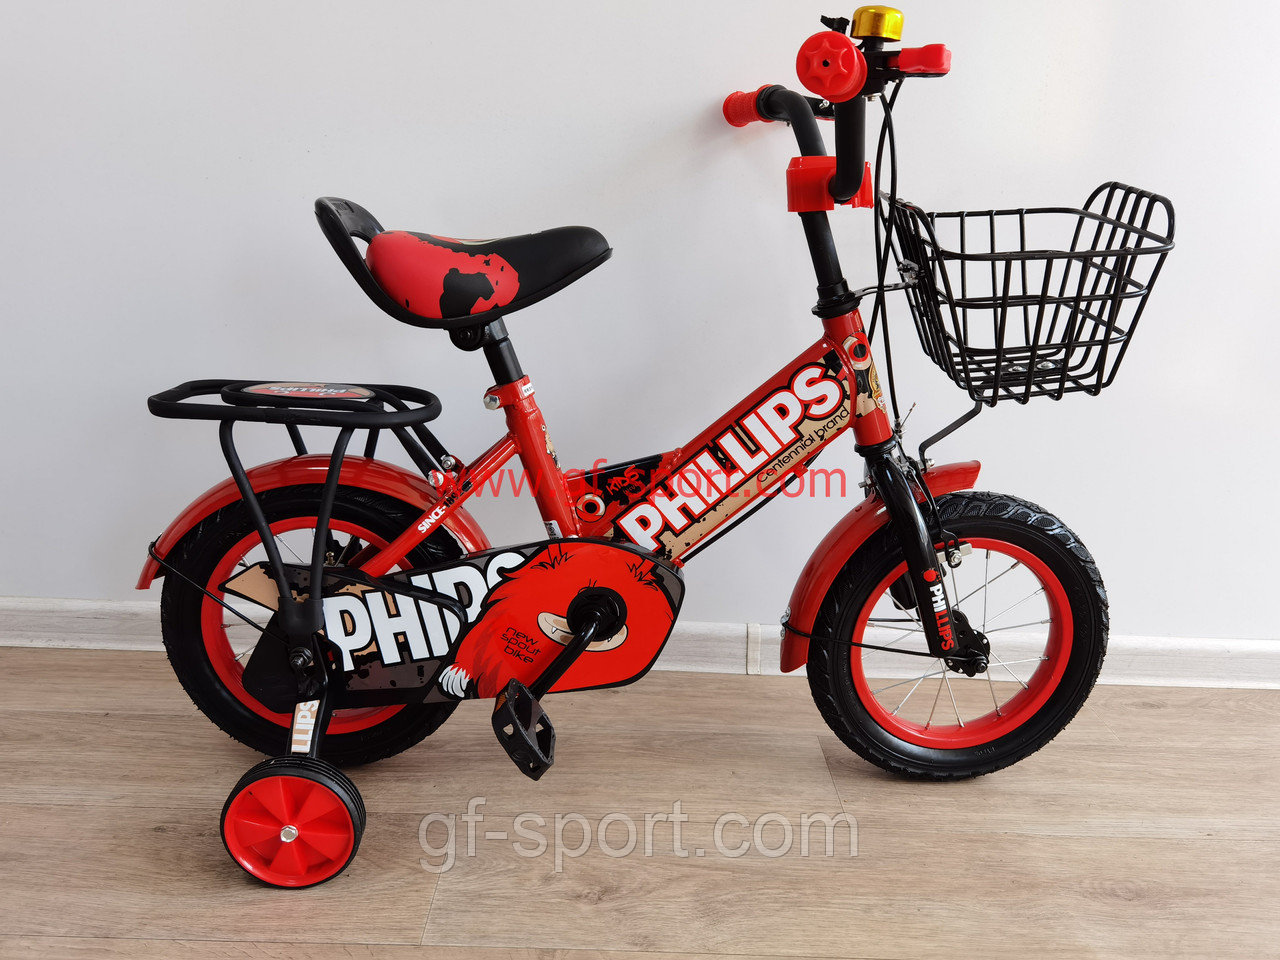 Велосипед Phillips красный оригинал детский с холостым ходом 12 размер